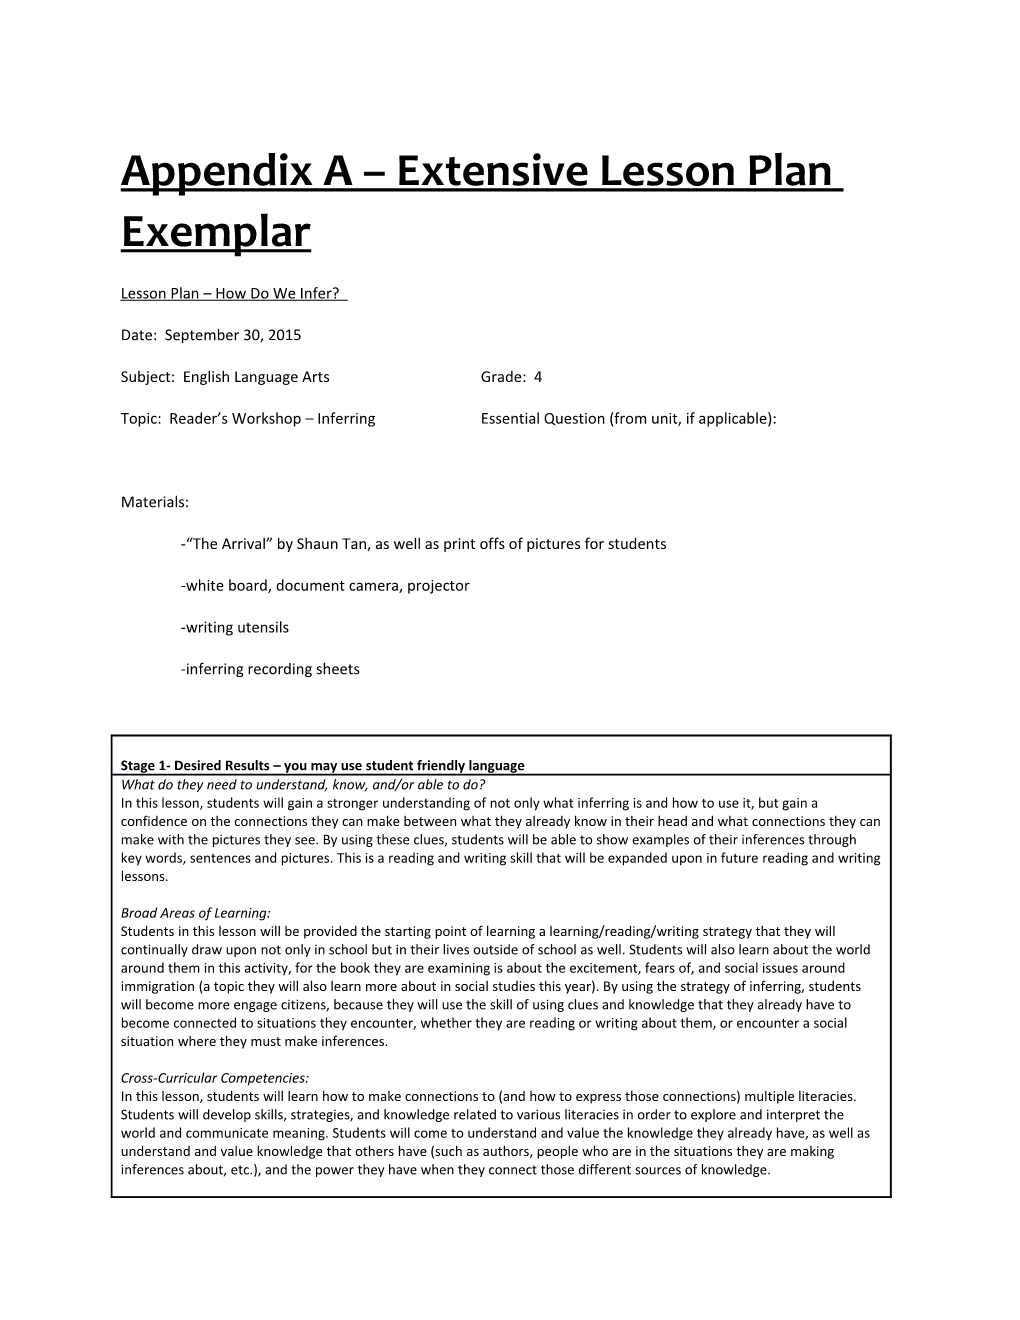 Appendix a Extensive Lesson Plan Exemplar